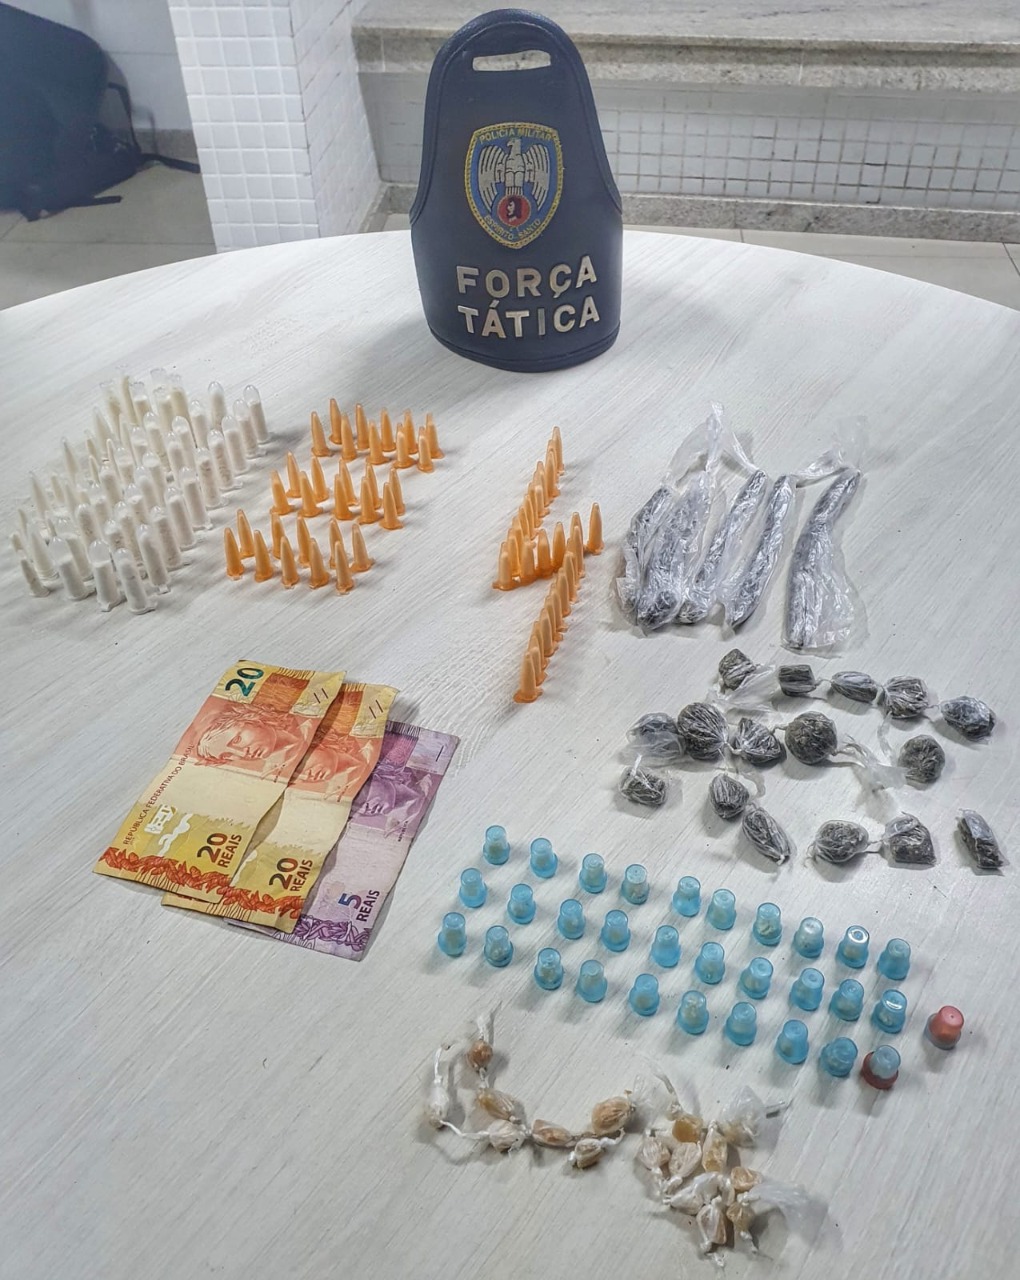 Drogas foram apreendidas durante Operação Narco no ES